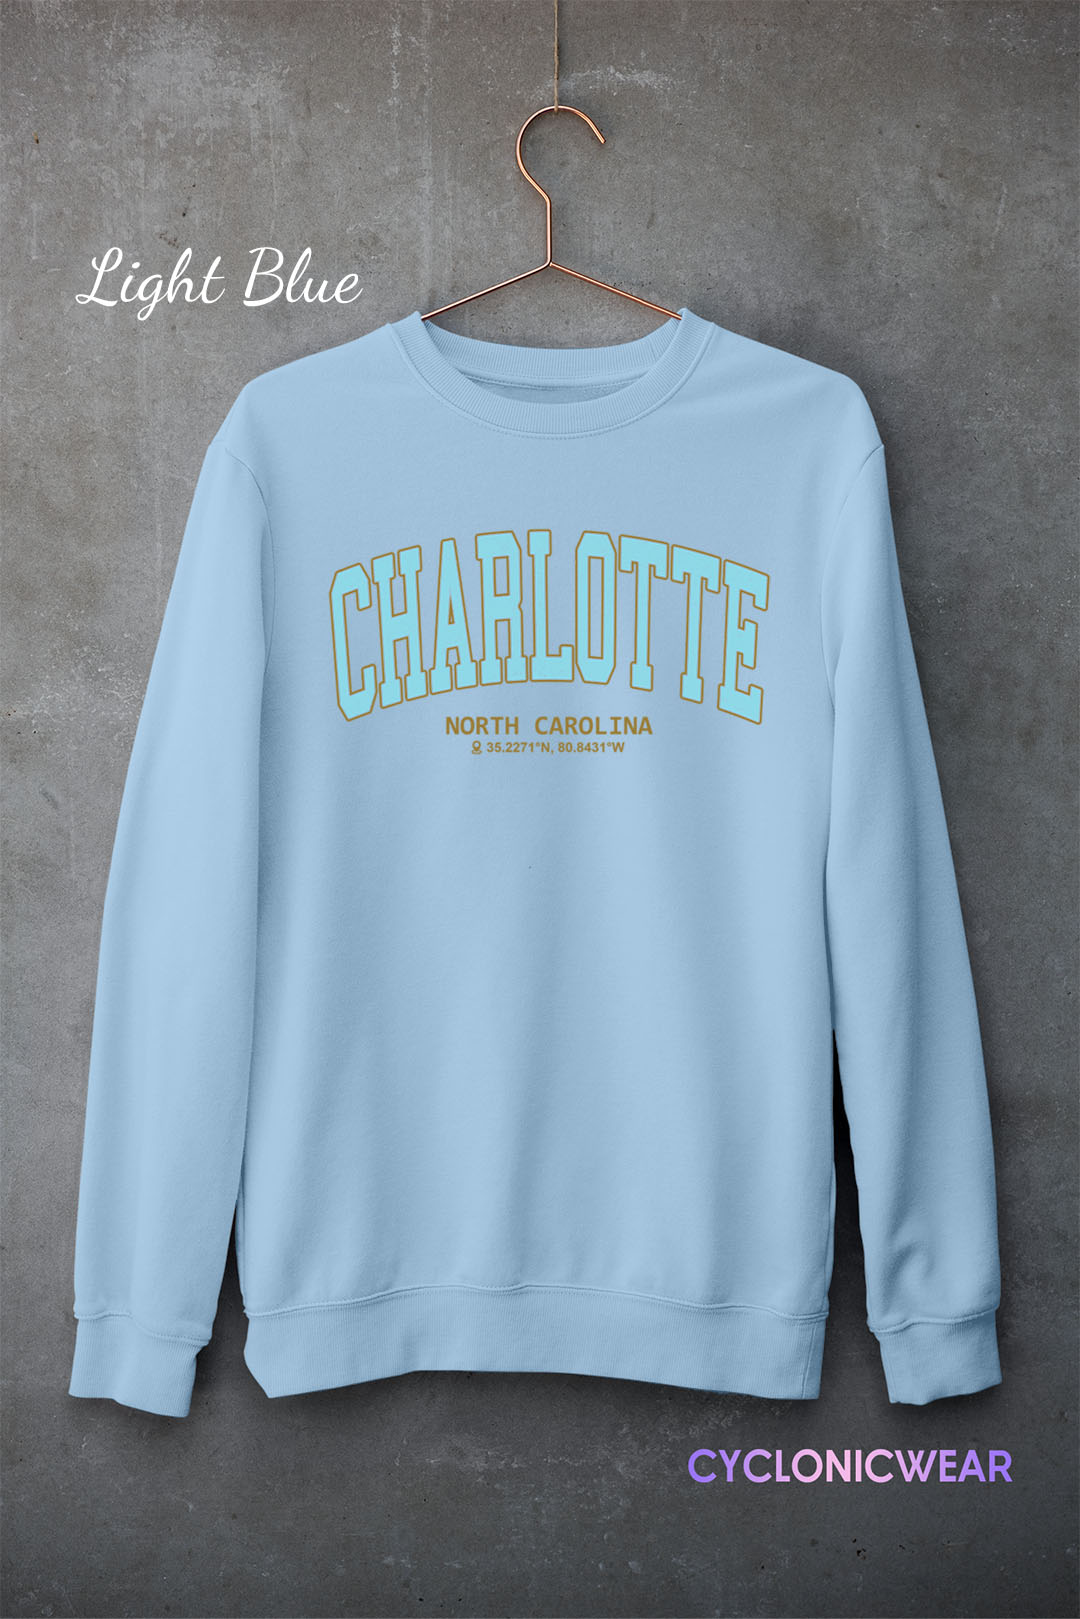 Vintage Charlotte North Carolina Sweatshirt